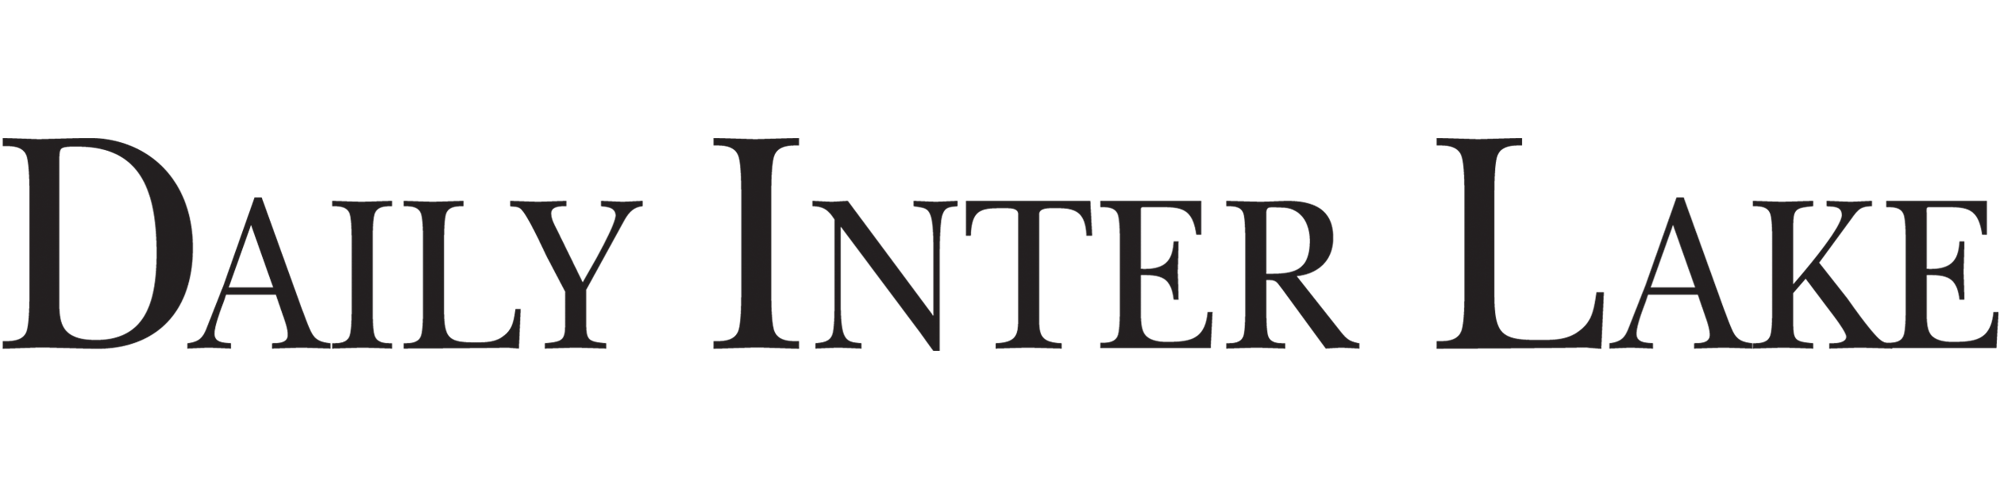 Daily Inter Lake Logo